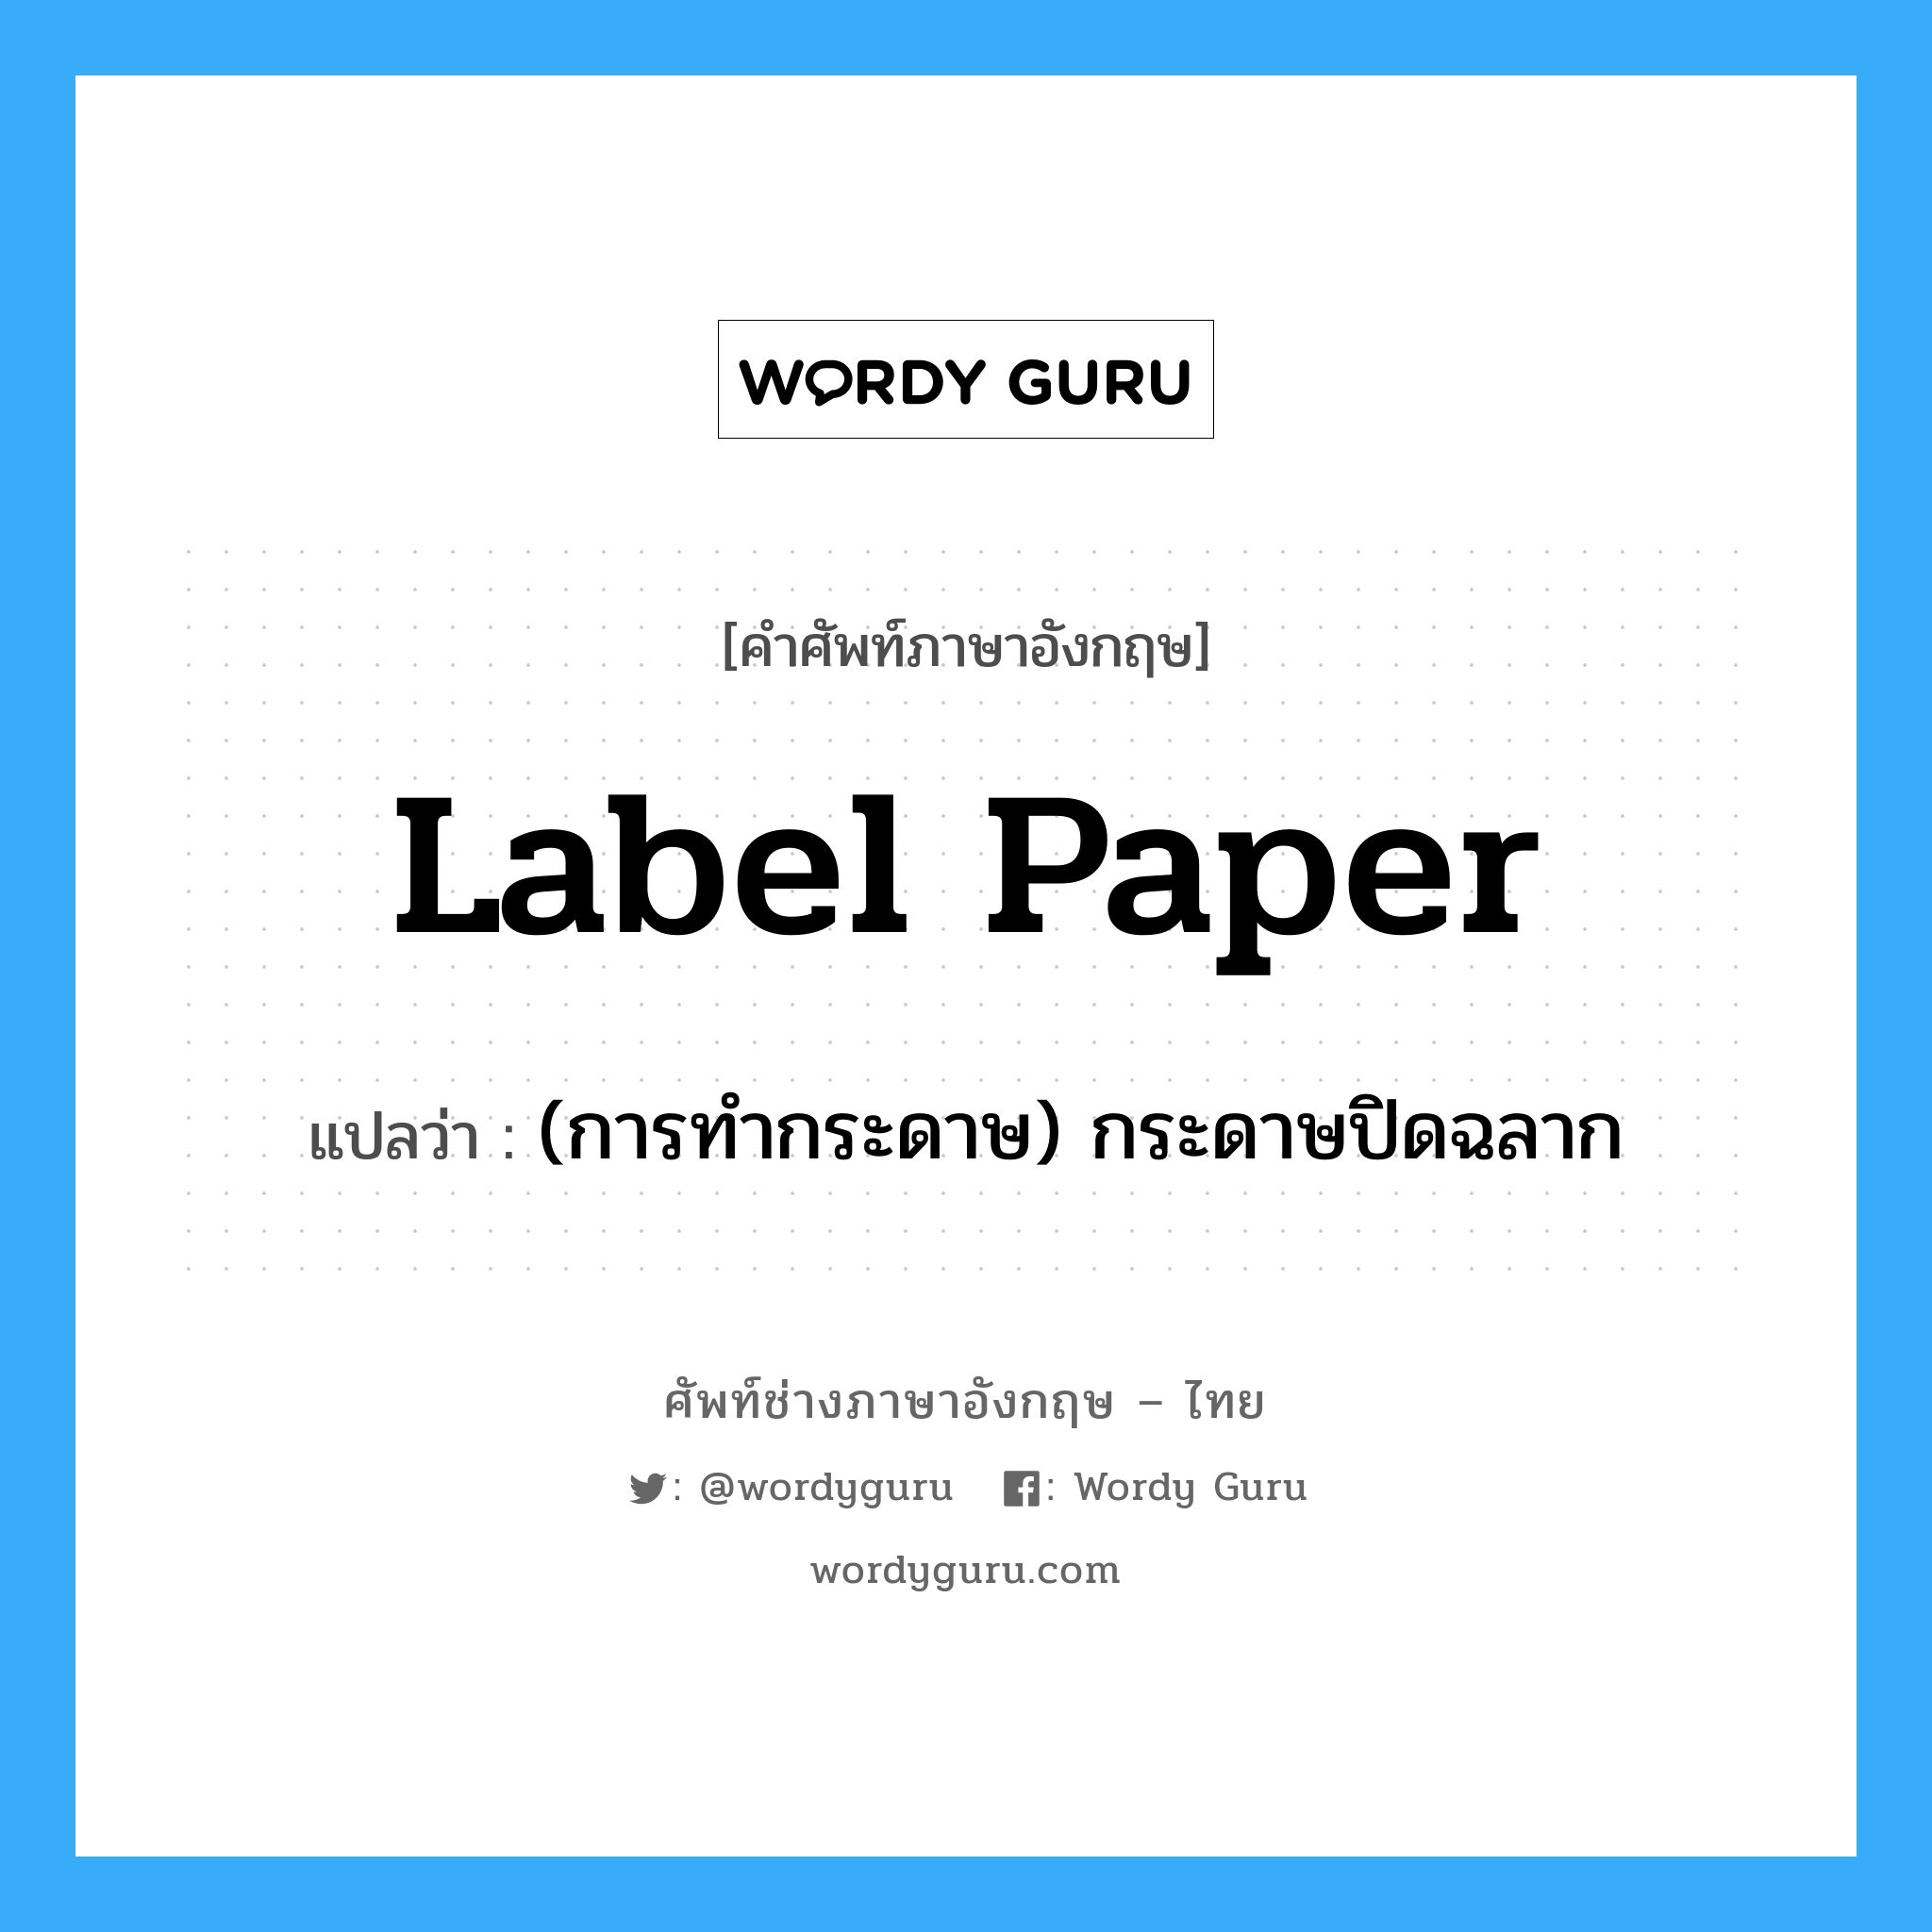 label paper แปลว่า?, คำศัพท์ช่างภาษาอังกฤษ - ไทย label paper คำศัพท์ภาษาอังกฤษ label paper แปลว่า (การทำกระดาษ) กระดาษปิดฉลาก